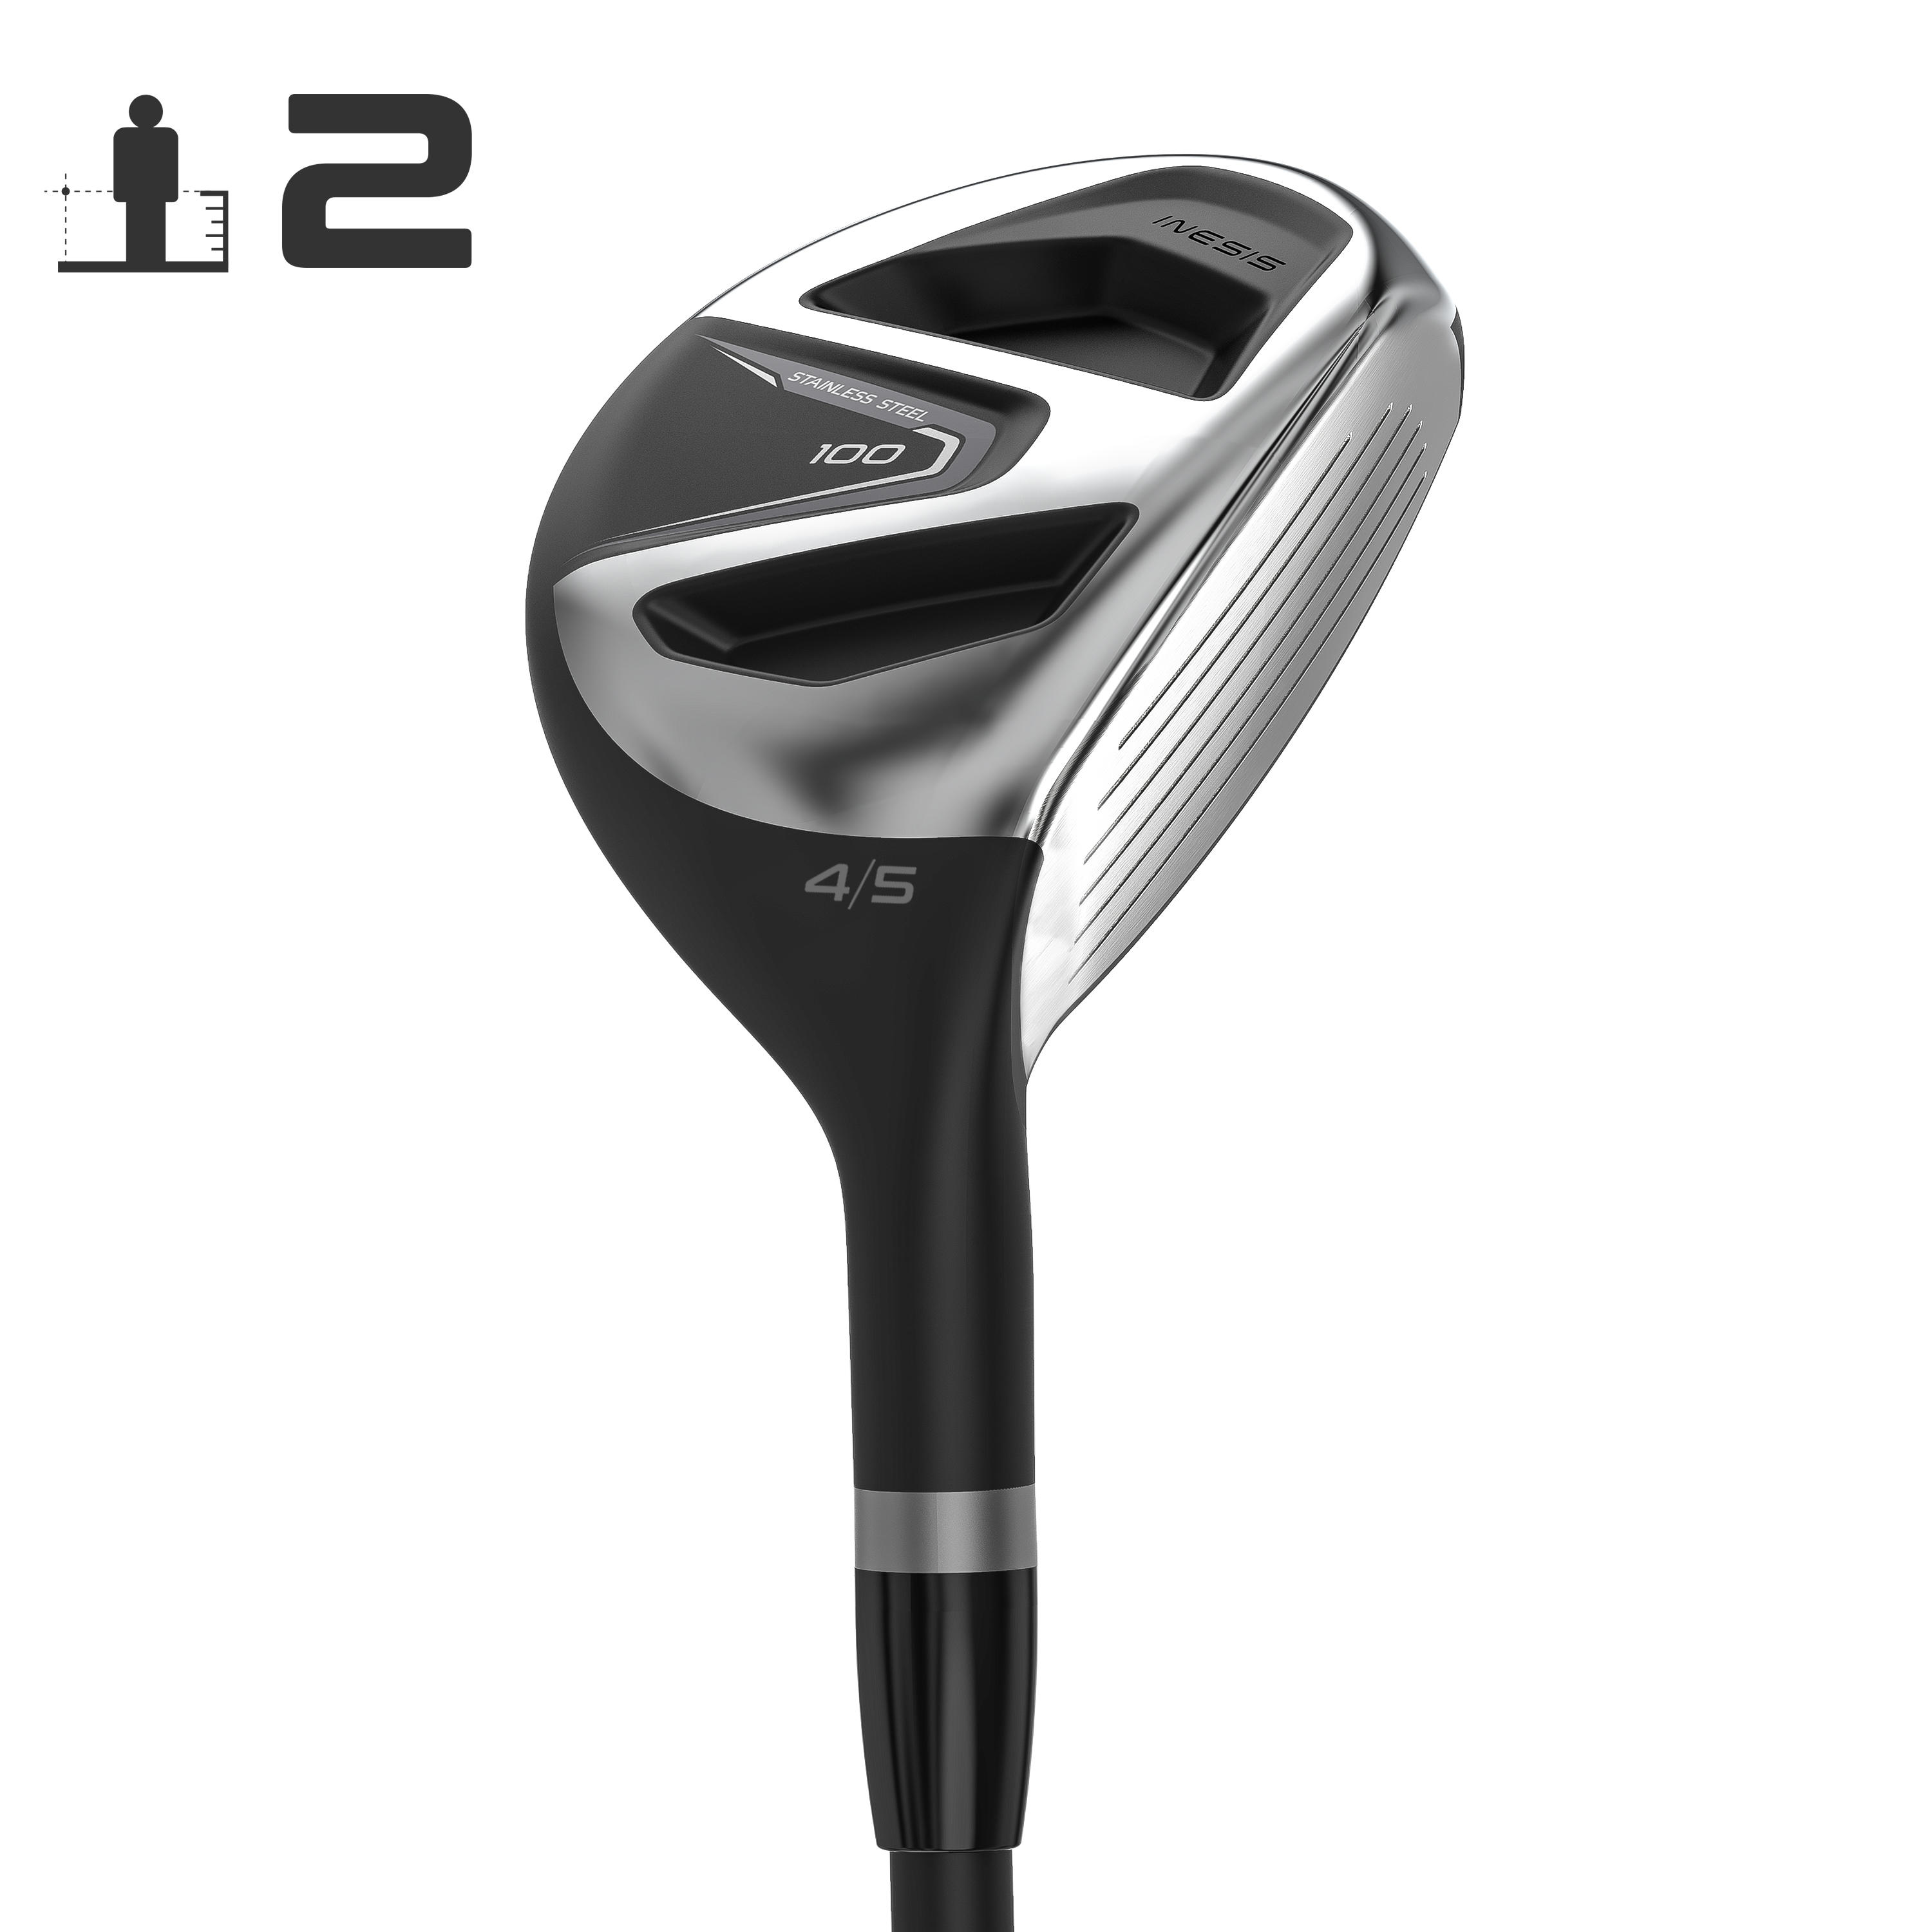 [ส่งฟรี ] ไม้กอล์ฟหัวไฮบริดก้านแกรไฟต์สำหรับผู้ใหญ่ถนัดขวารุ่น 100 (เบอร์ 2) Adult Hybrid 100 Right-Handed Graphite Size 2 ไม้กอล์ฟครบชุด อุปกรณ์กอล์ฟ อุปกรณ์ตีกอล์ฟ ก้านไม้กอล์ฟ อุปกรณ์ซ้อมกอล์ฟ Golf clubs iron set Golf clubs Golf driver  Golf iron set